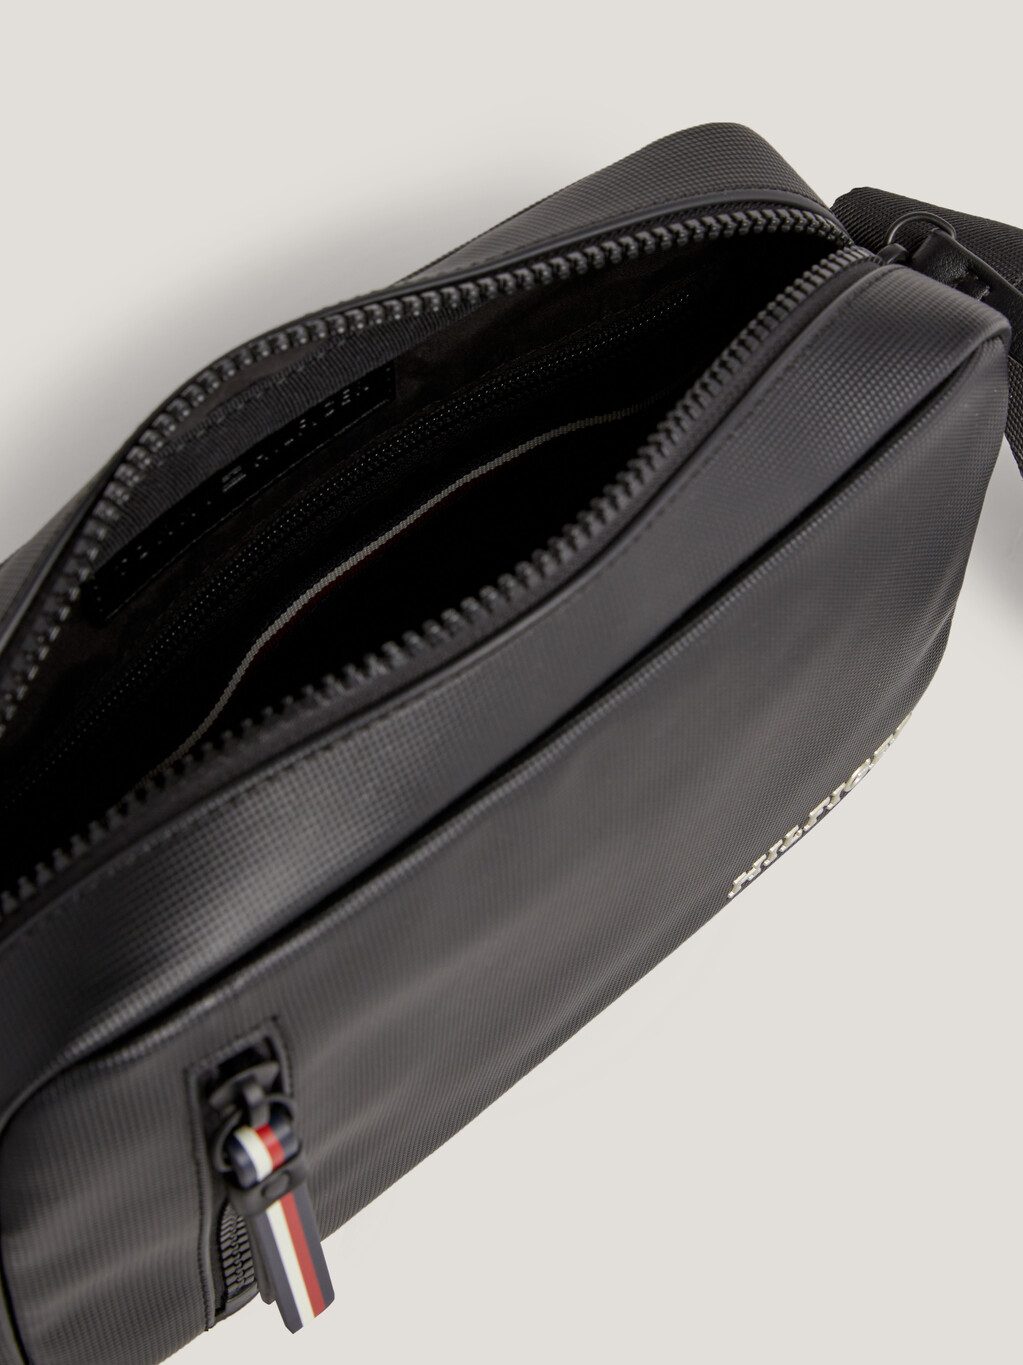 Pique Textured Small Camera Bag, Black, hi-res